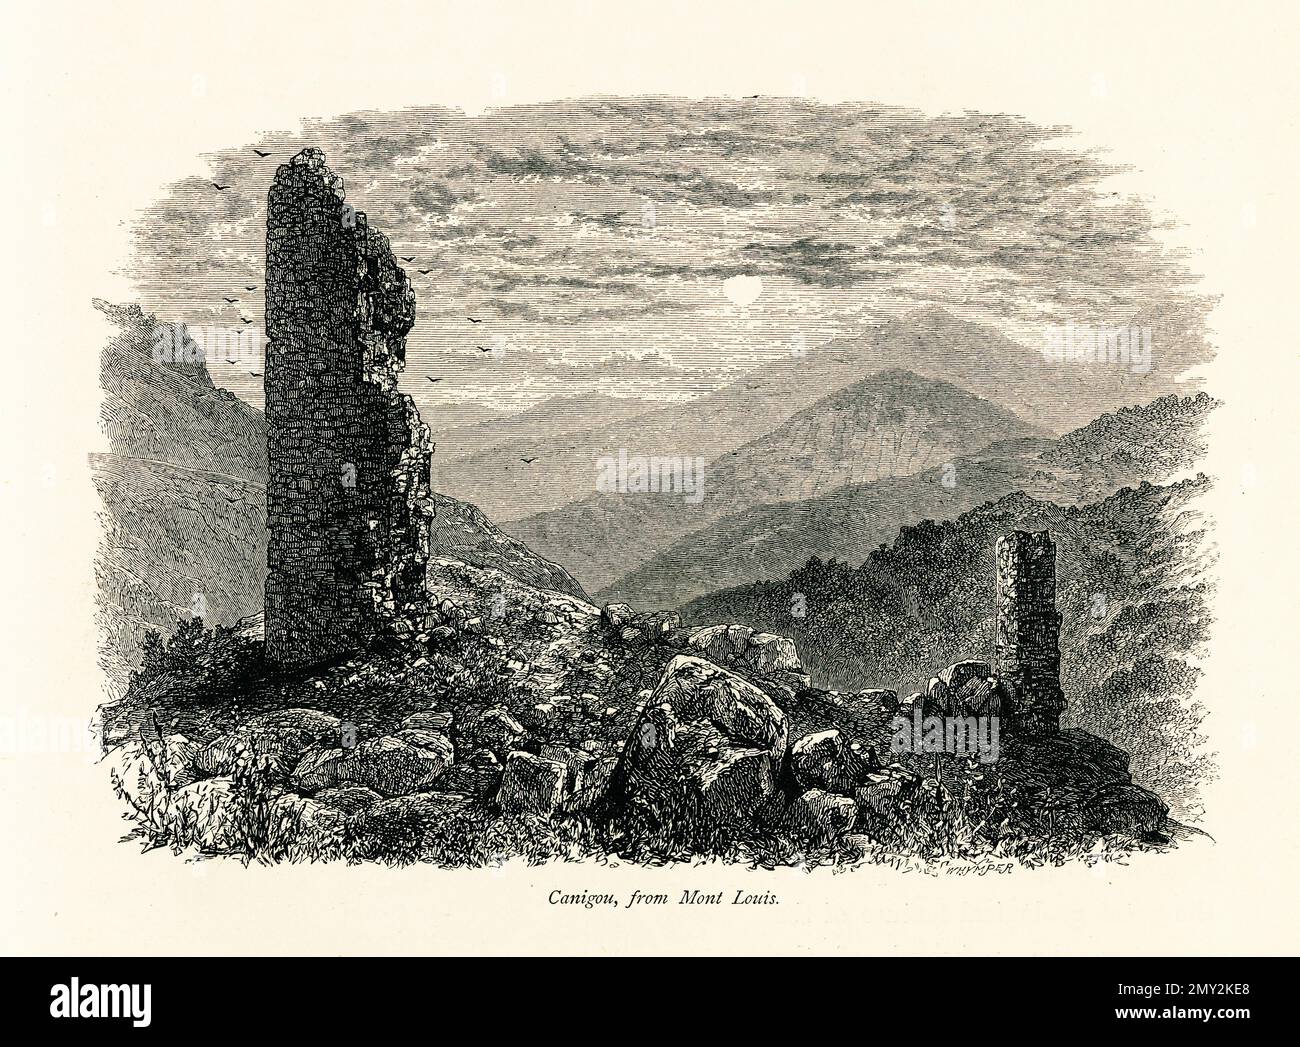 Antica illustrazione di Canigou, una montagna nei Pirenei catalani della Francia meridionale. Incisione pubblicata in picturesque Europe, Vol. III (Cassell & Foto Stock